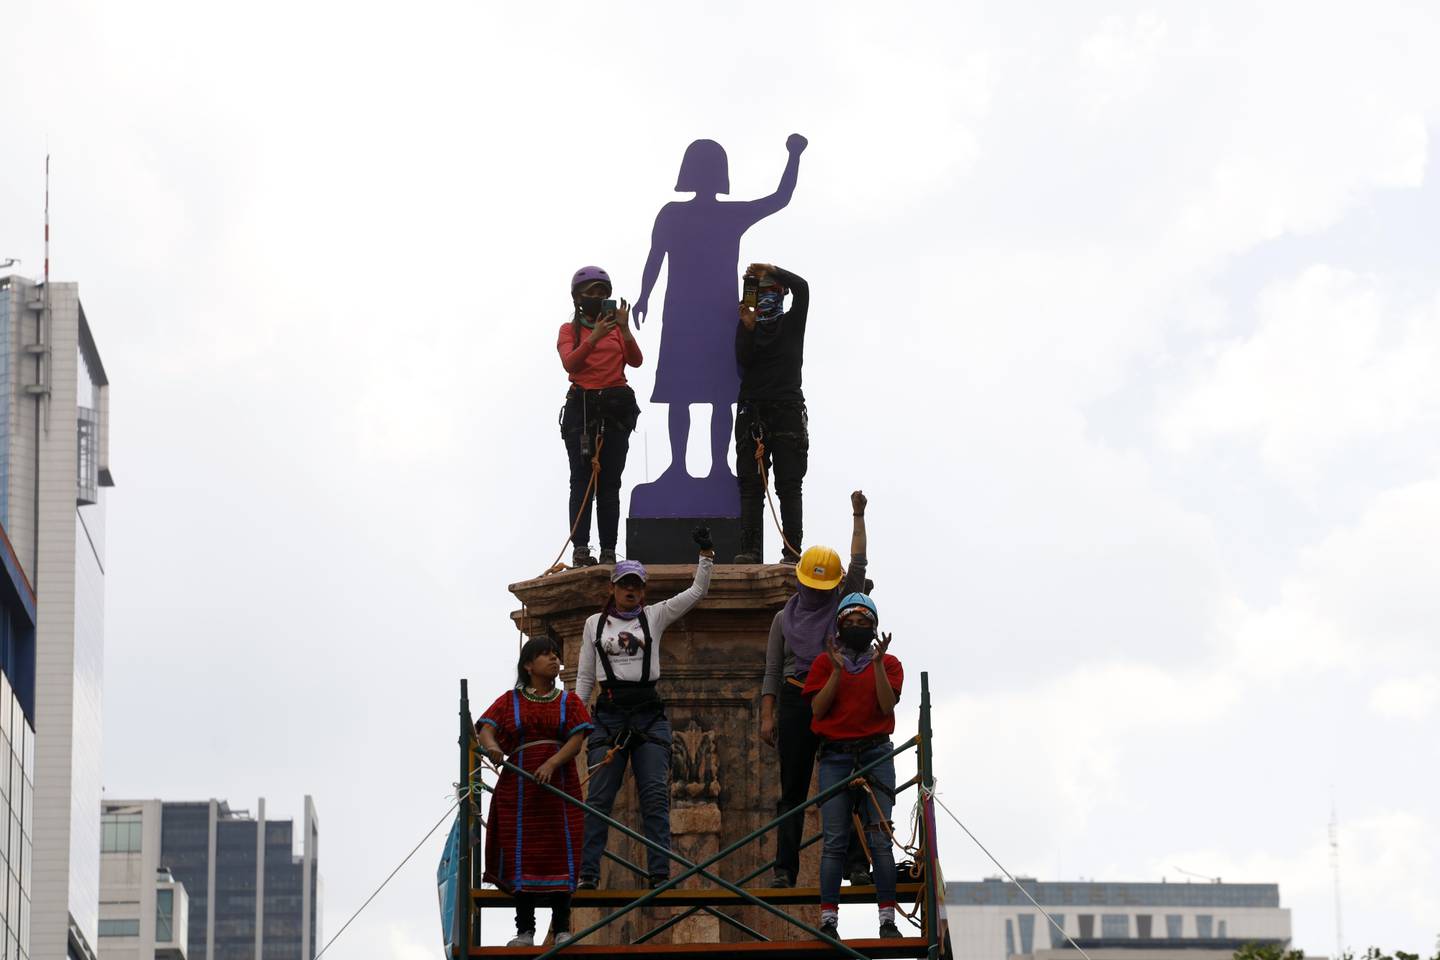 Manifestantes y familiares de víctimas de feminicidio inauguraron un nuevo monumento hecho de acero en lugar de madera en la Glorieta de las Mujeres Que Luchan el 5 de marzo. Fotógrafo: Luis Barrón/Eyepix Group/Getty Images